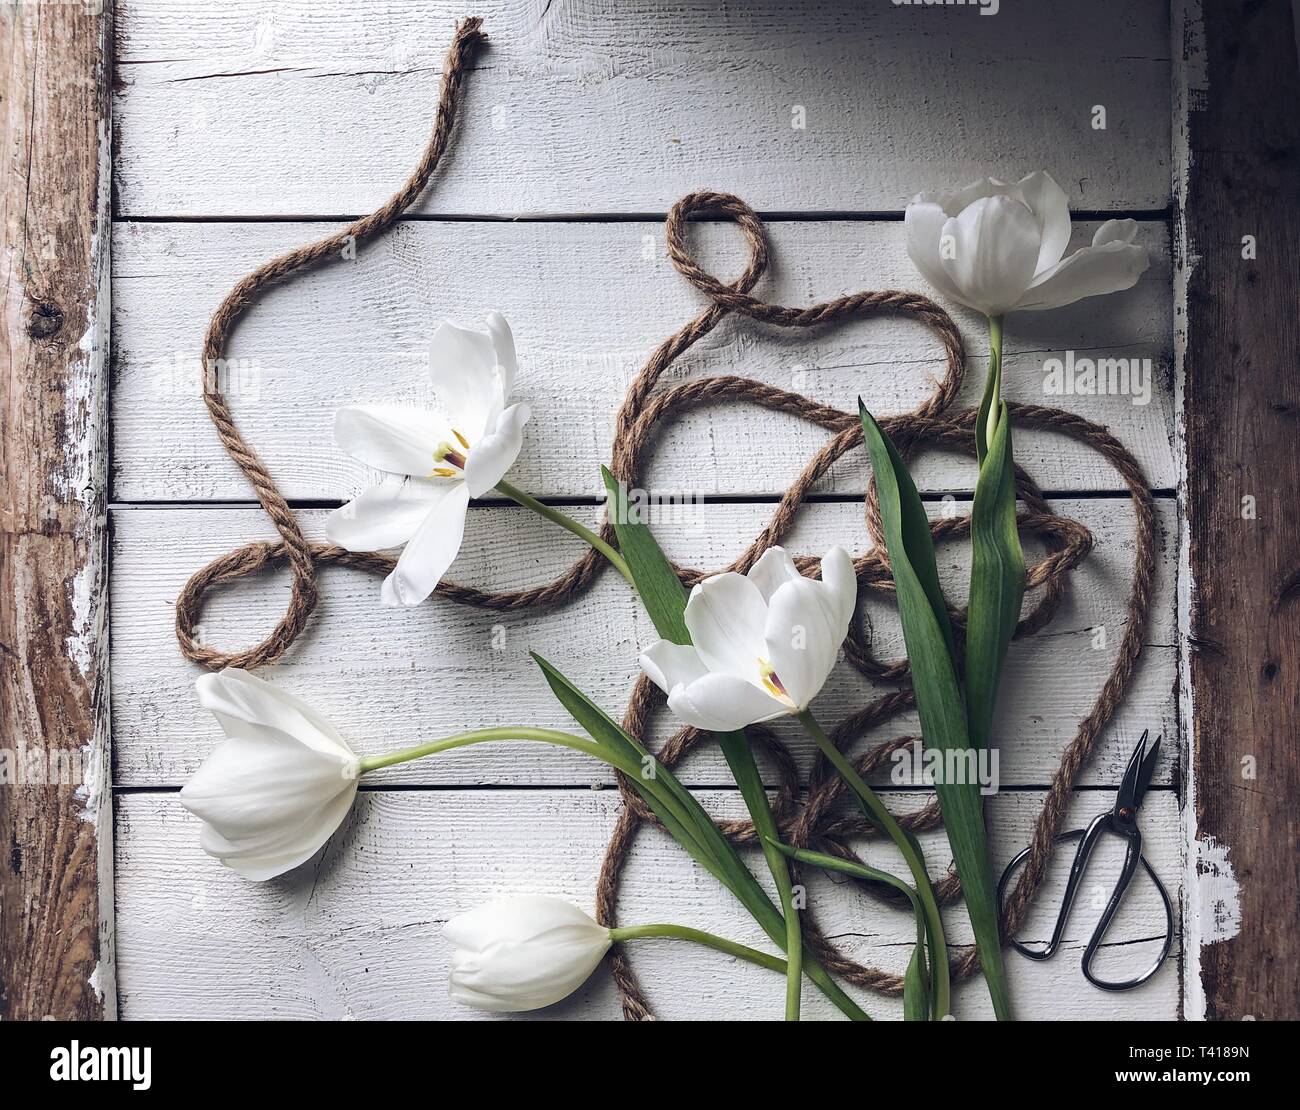 Weiße Tulpen und Seil auf einem Holztisch Stockfoto